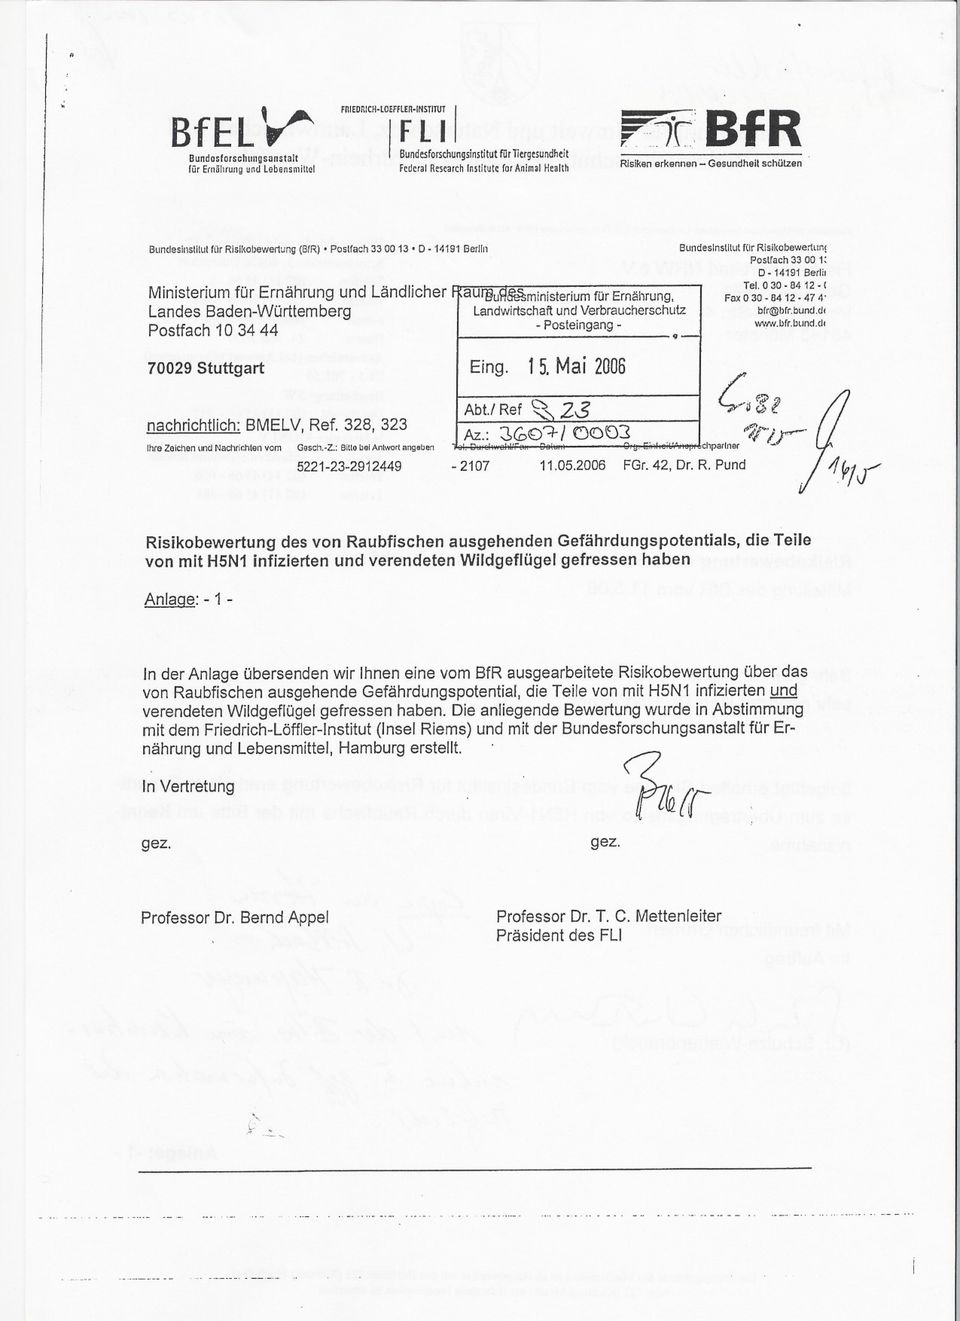 13.0.14191 Berl/n Ministerium für Ernährung und Ländlicher Landes Baden-Württemberg Postfach 10 34 44., Bundeslnstilul rurrlsl/(obewerllln( Postrach 33 00 1: D-14191 Berlh Tel. 0 30-84 12. ( Fax 0 30.